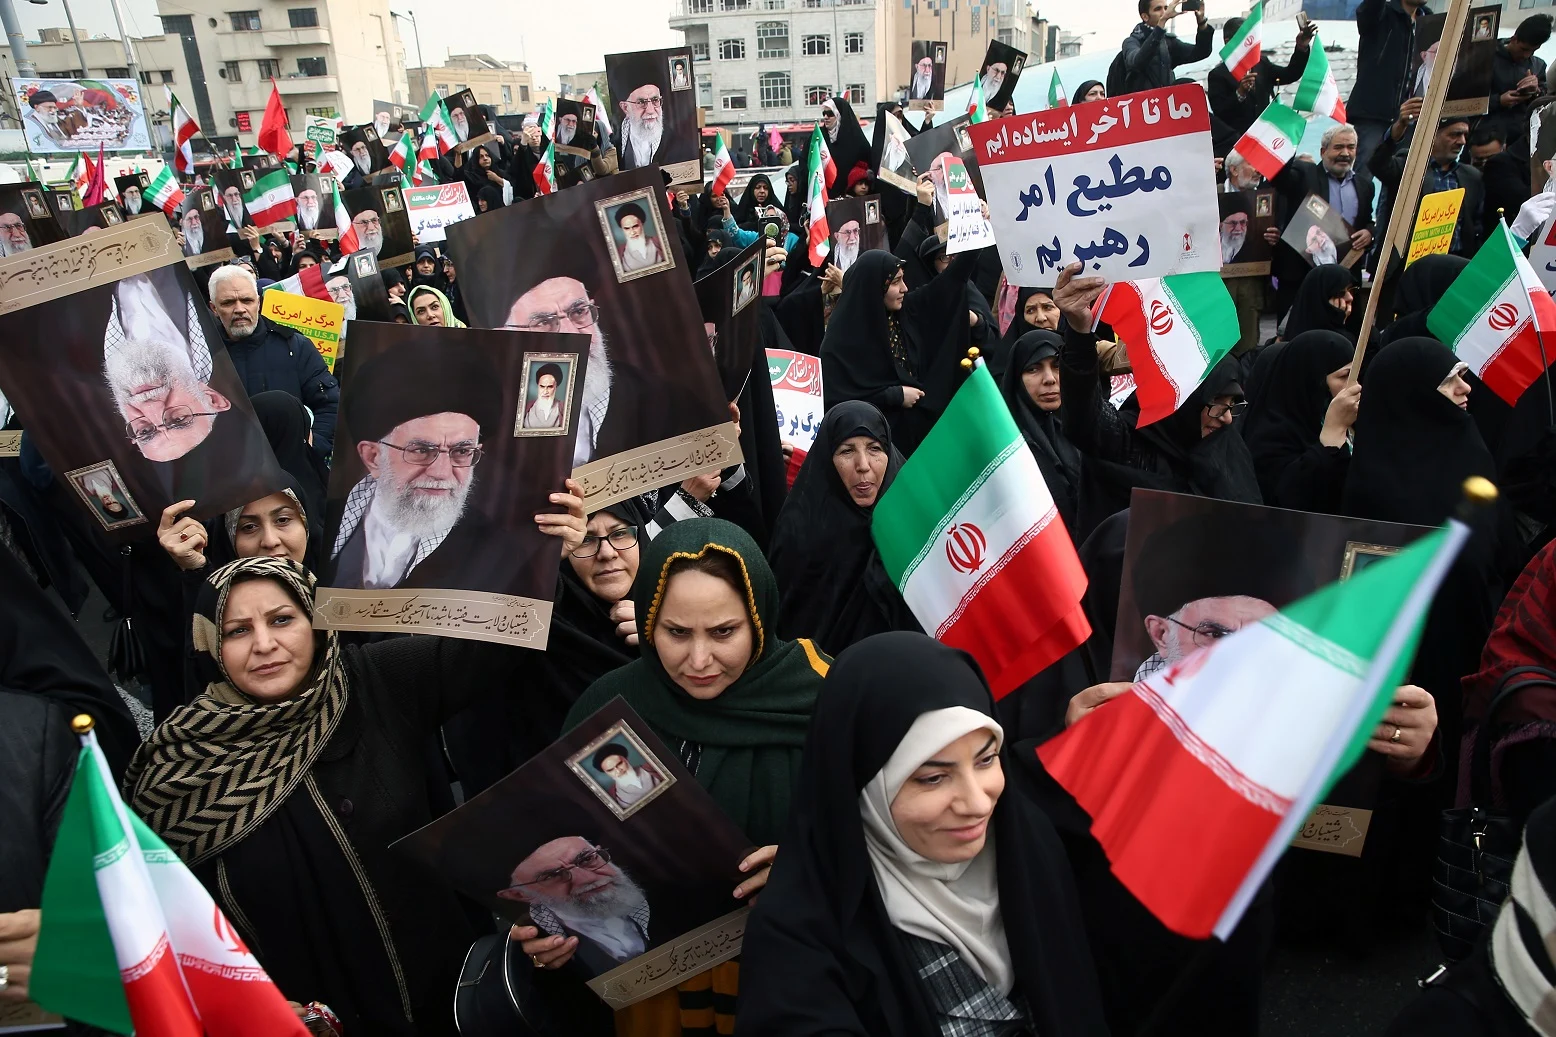 מפגינים פרו-ממשלתיים איראניים משתתפים בהפגנה בטהראן, איראן